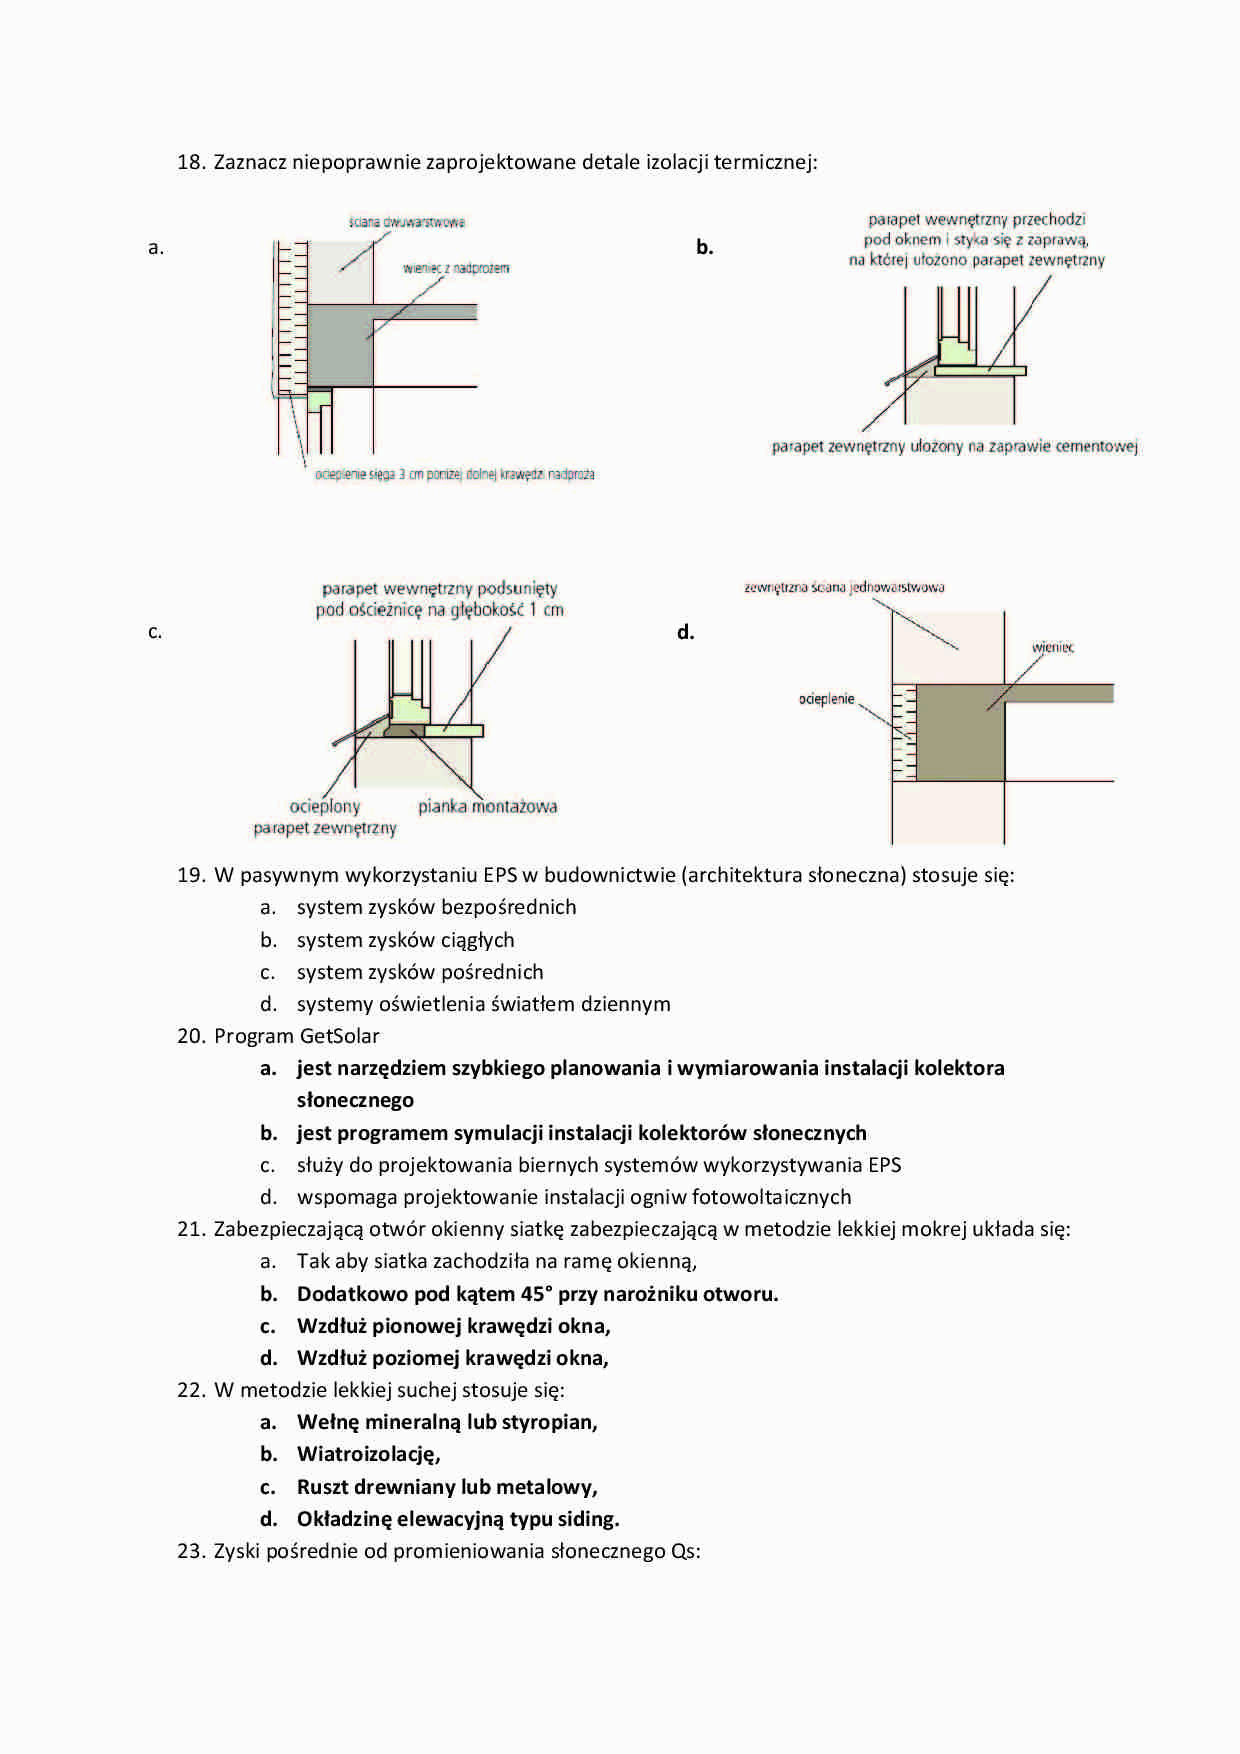 Fizyka budowli - Pytania egzaminacyjne Part 6 - strona 1